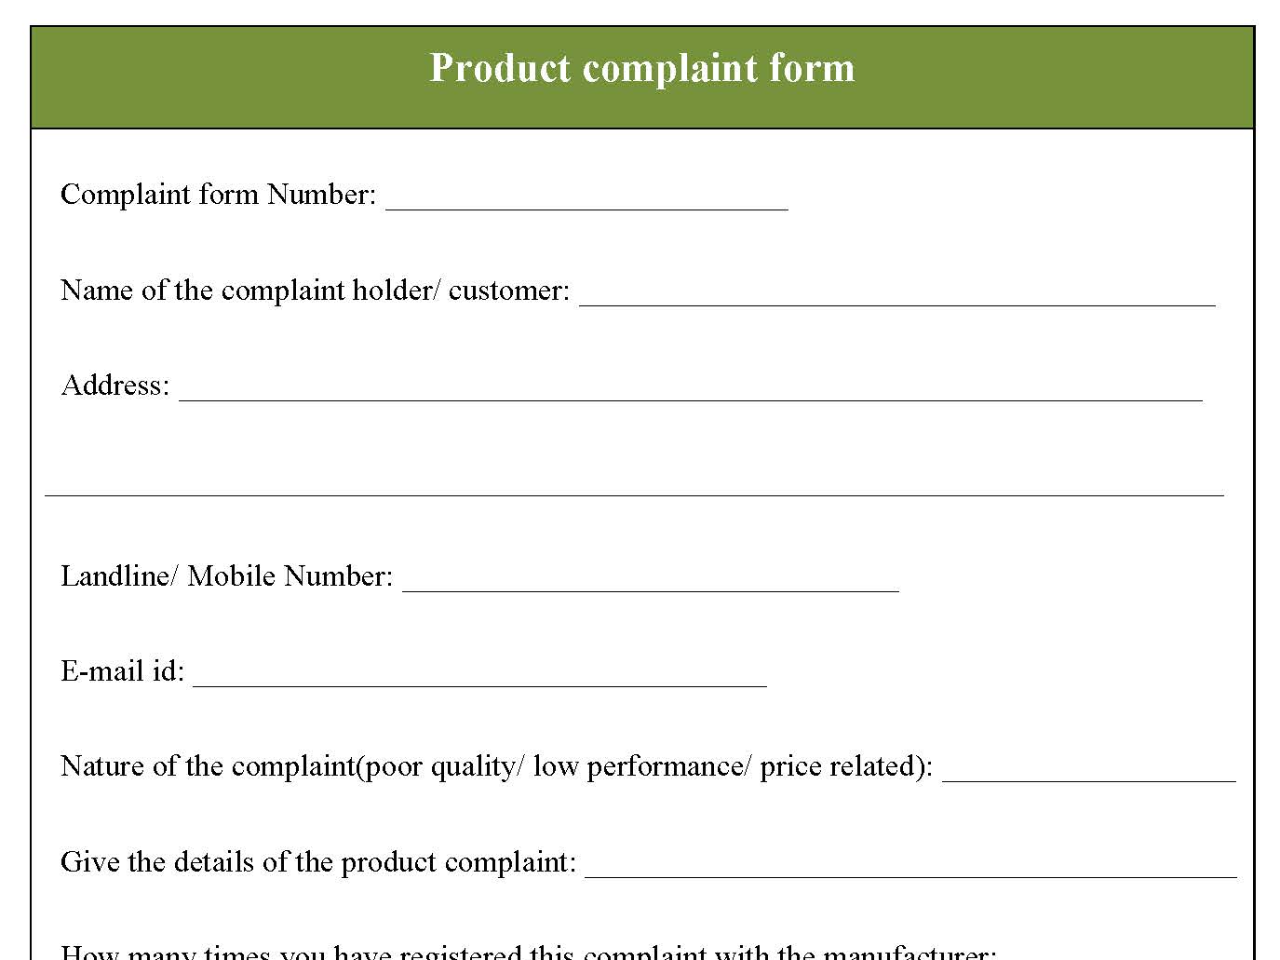 Product complaint form